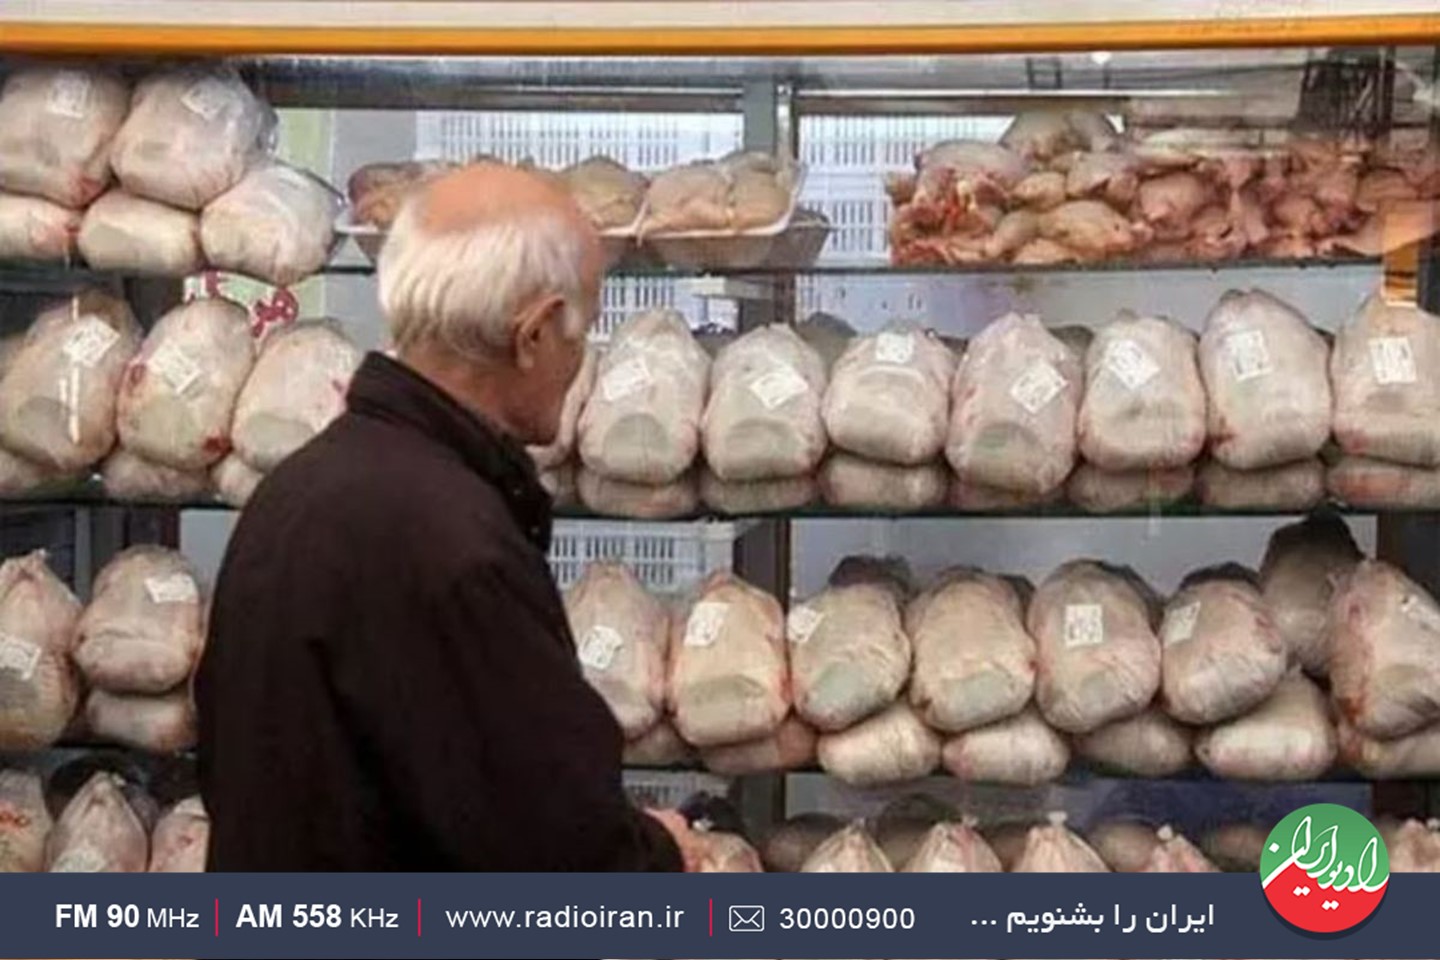 بررسی عرضه مرغ نیمایی در رادیو ایران